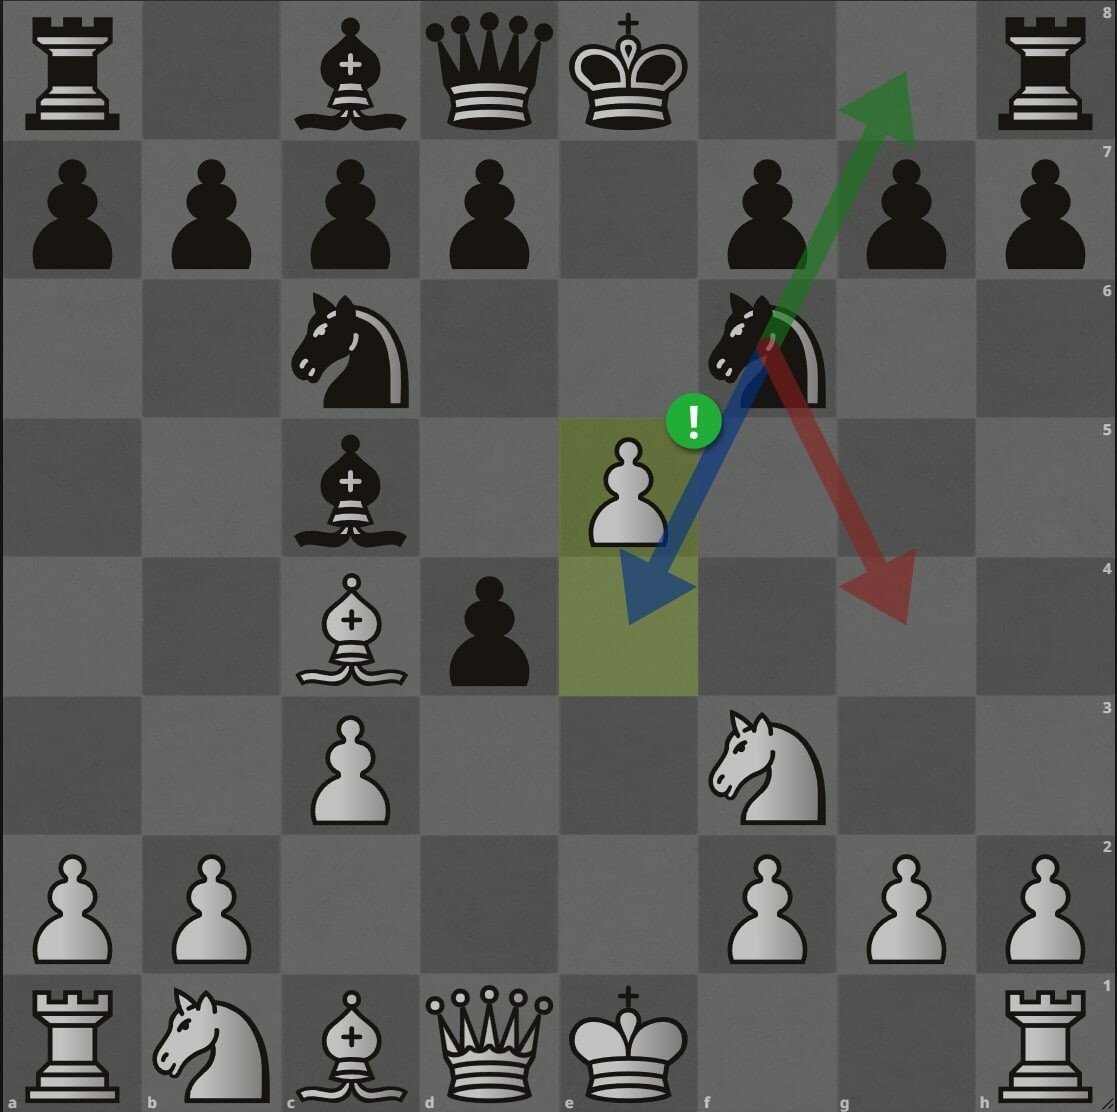 Против сицилианской защиты. Шахматный дебют Сицилианская защита. Шахматы d4 d5 c4 c6 kf3. Система Мароци шахматы. Ладья против пешки.